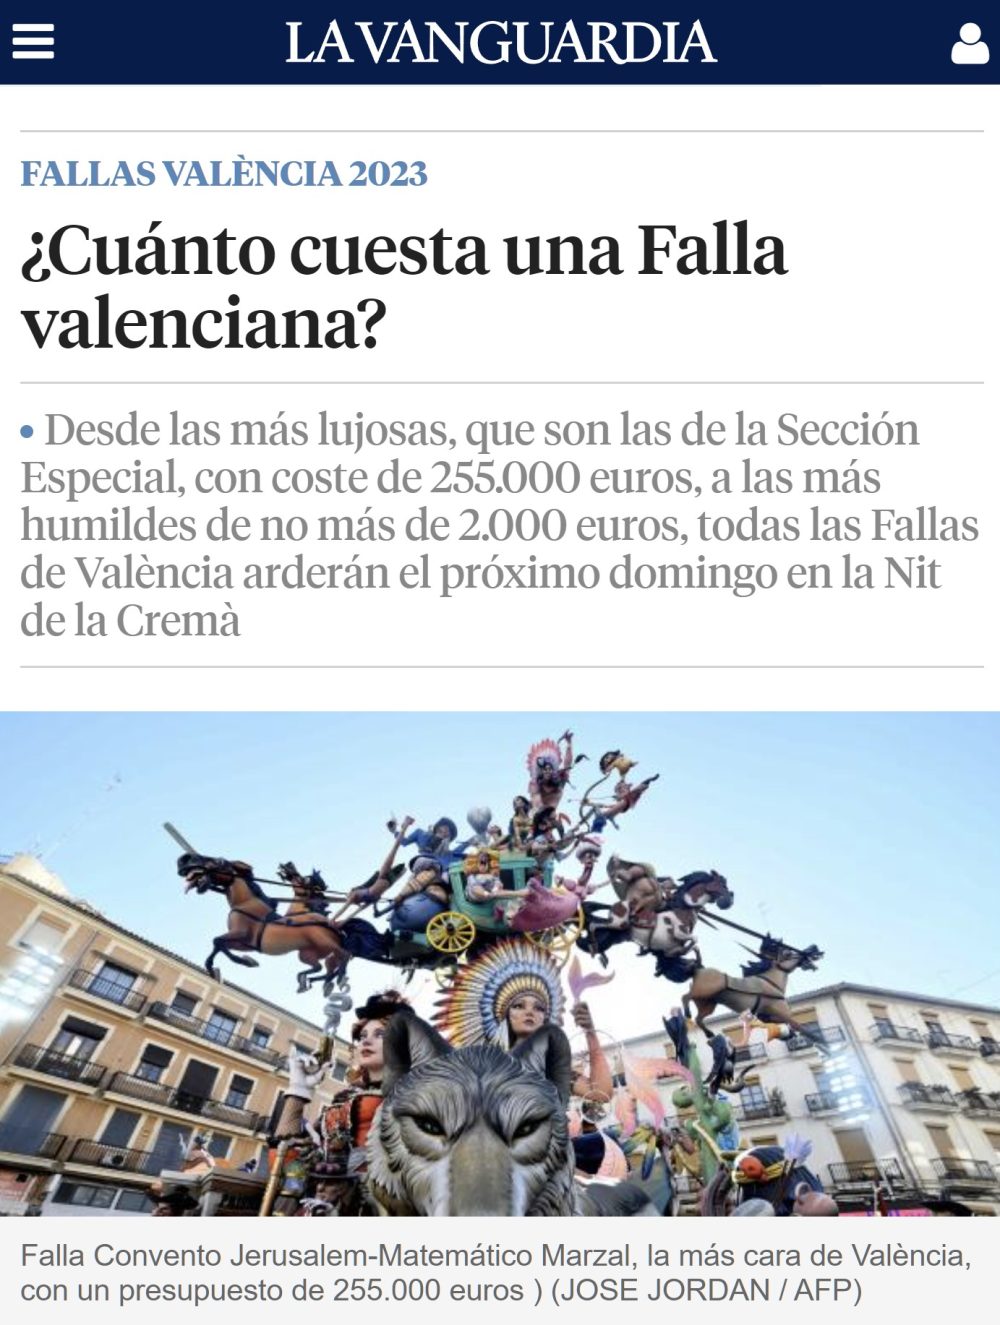 ¿Cuánto cuesta una falla valenciana?